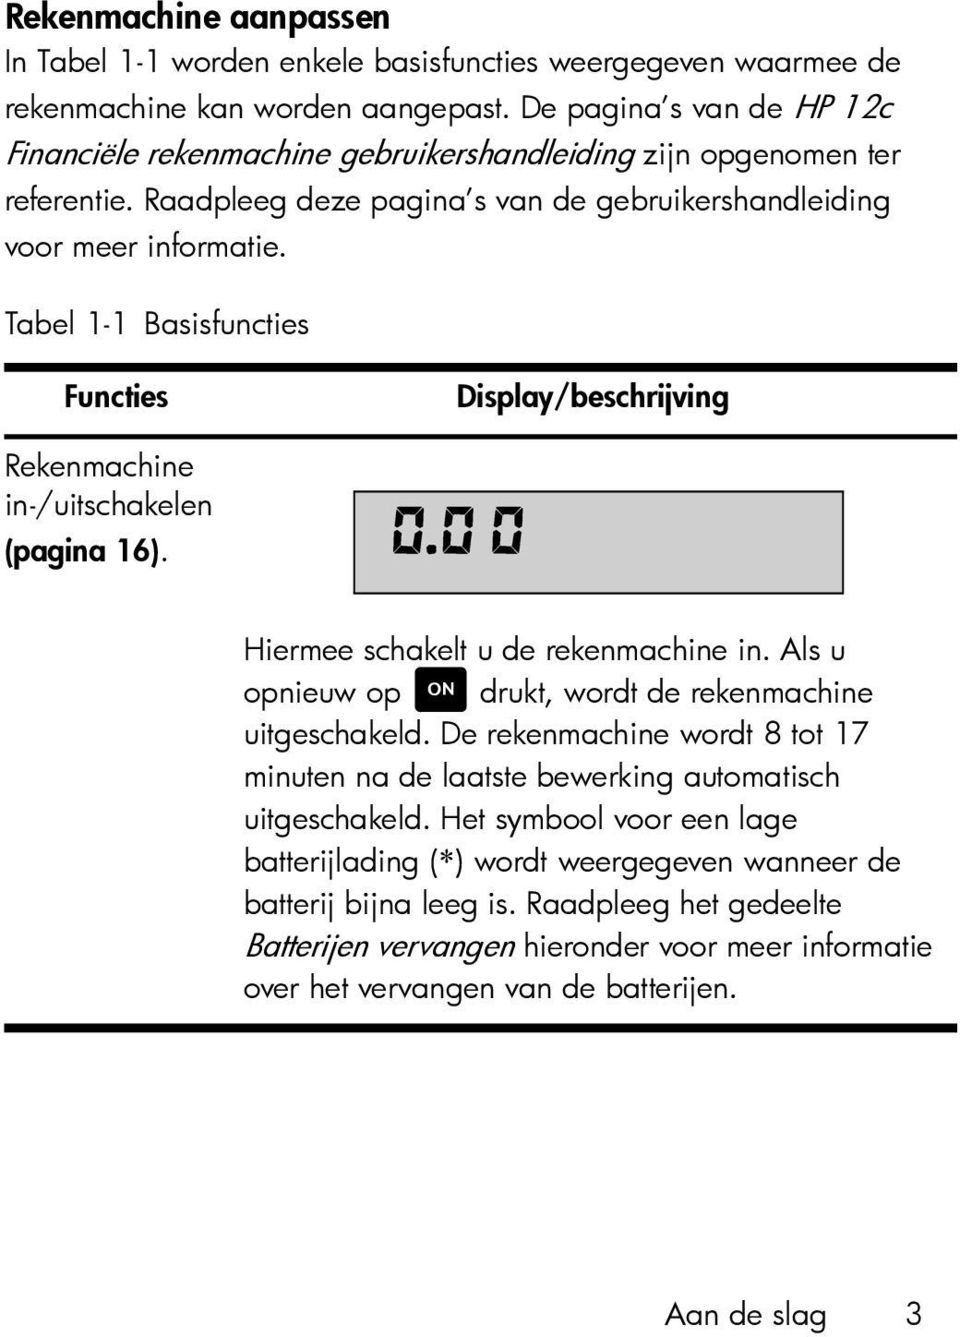 Tabel 1-1 Basisfuncties Functies Display/beschrijving Rekenmachine in-/uitschakelen (pagina 16). Hiermee schakelt u de rekenmachine in. Als u opnieuw op S drukt, wordt de rekenmachine uitgeschakeld.